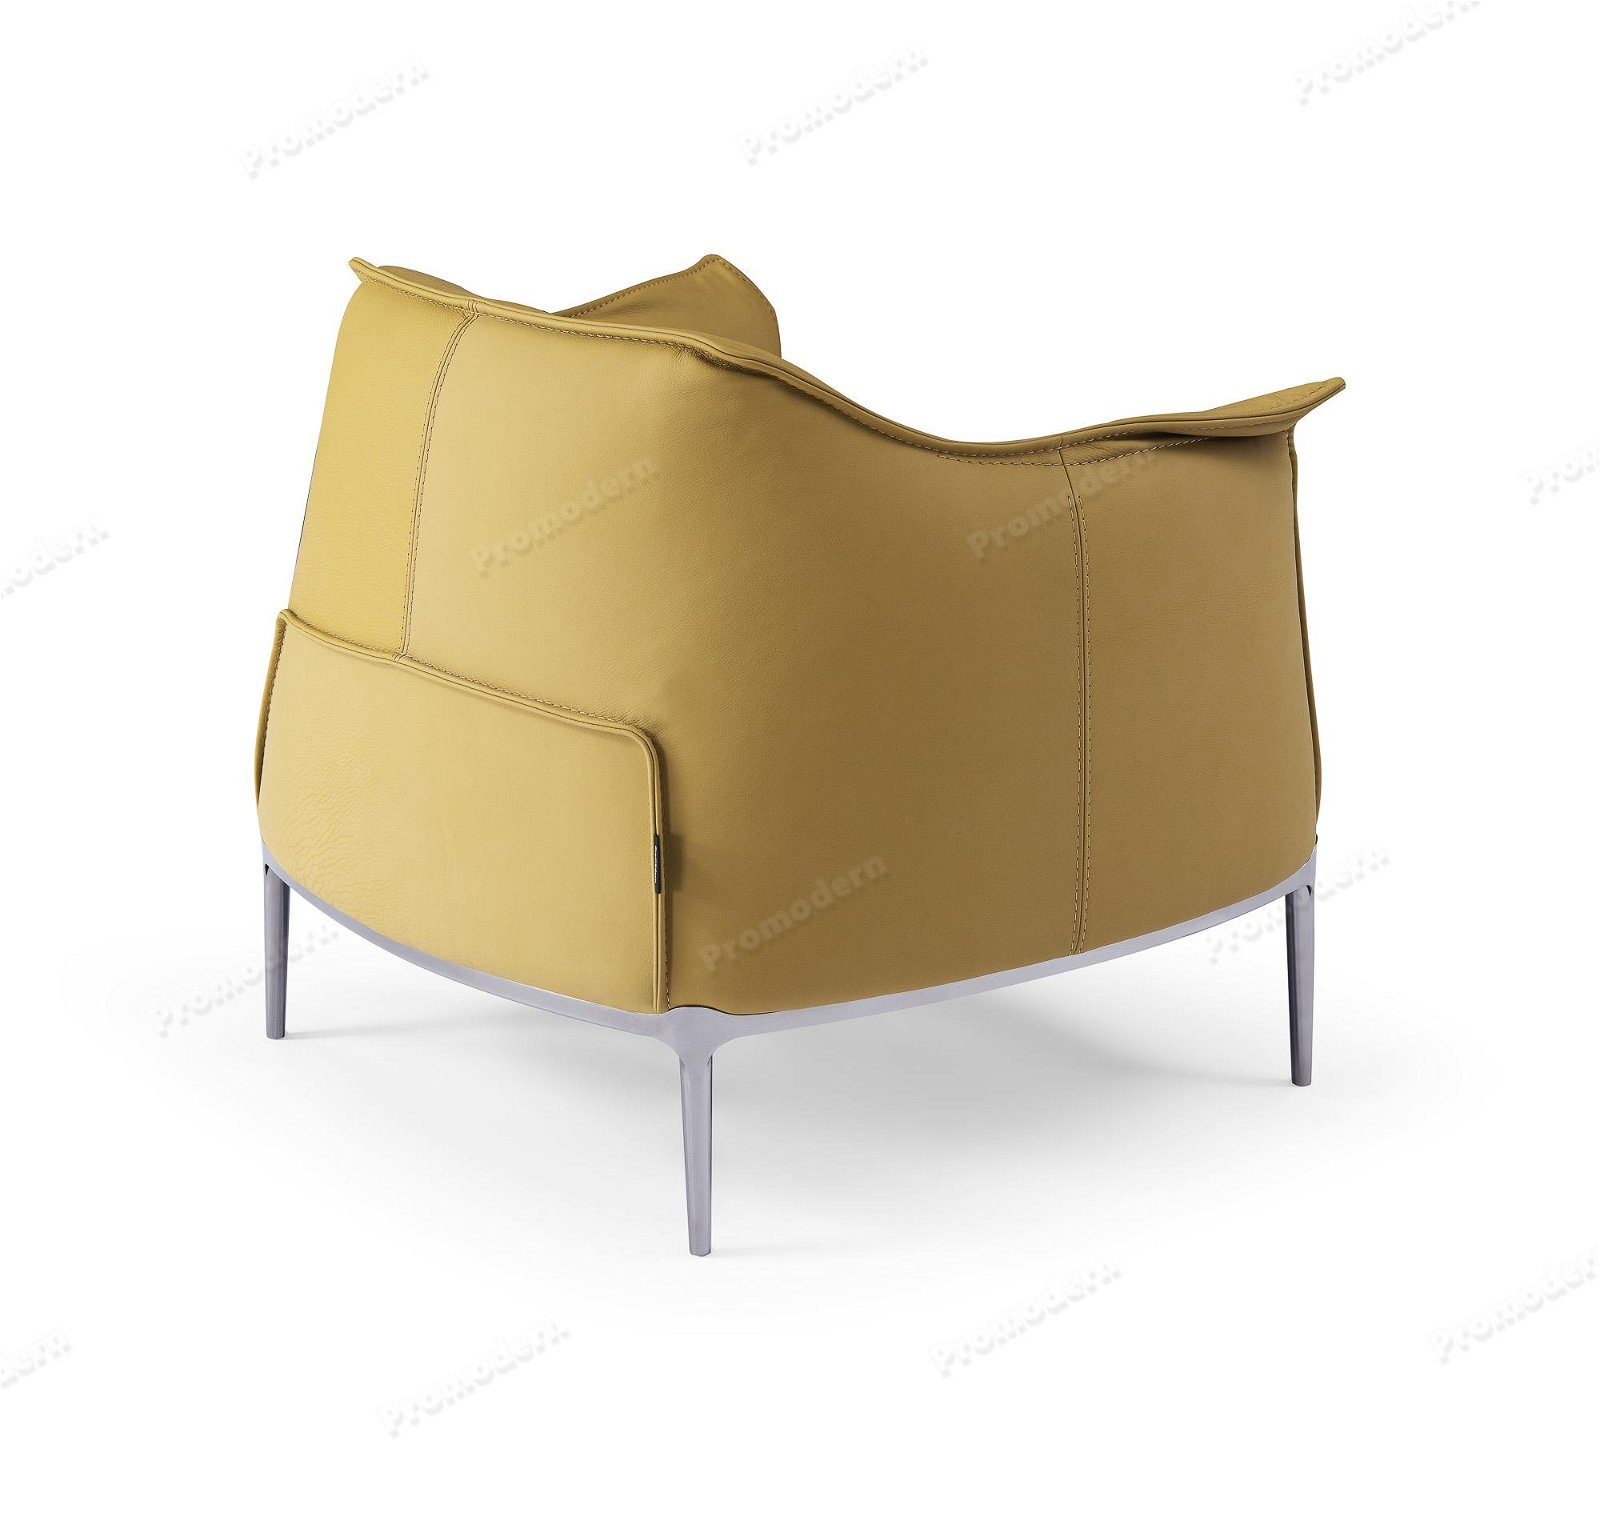 MODERN LEISURE Chair 3